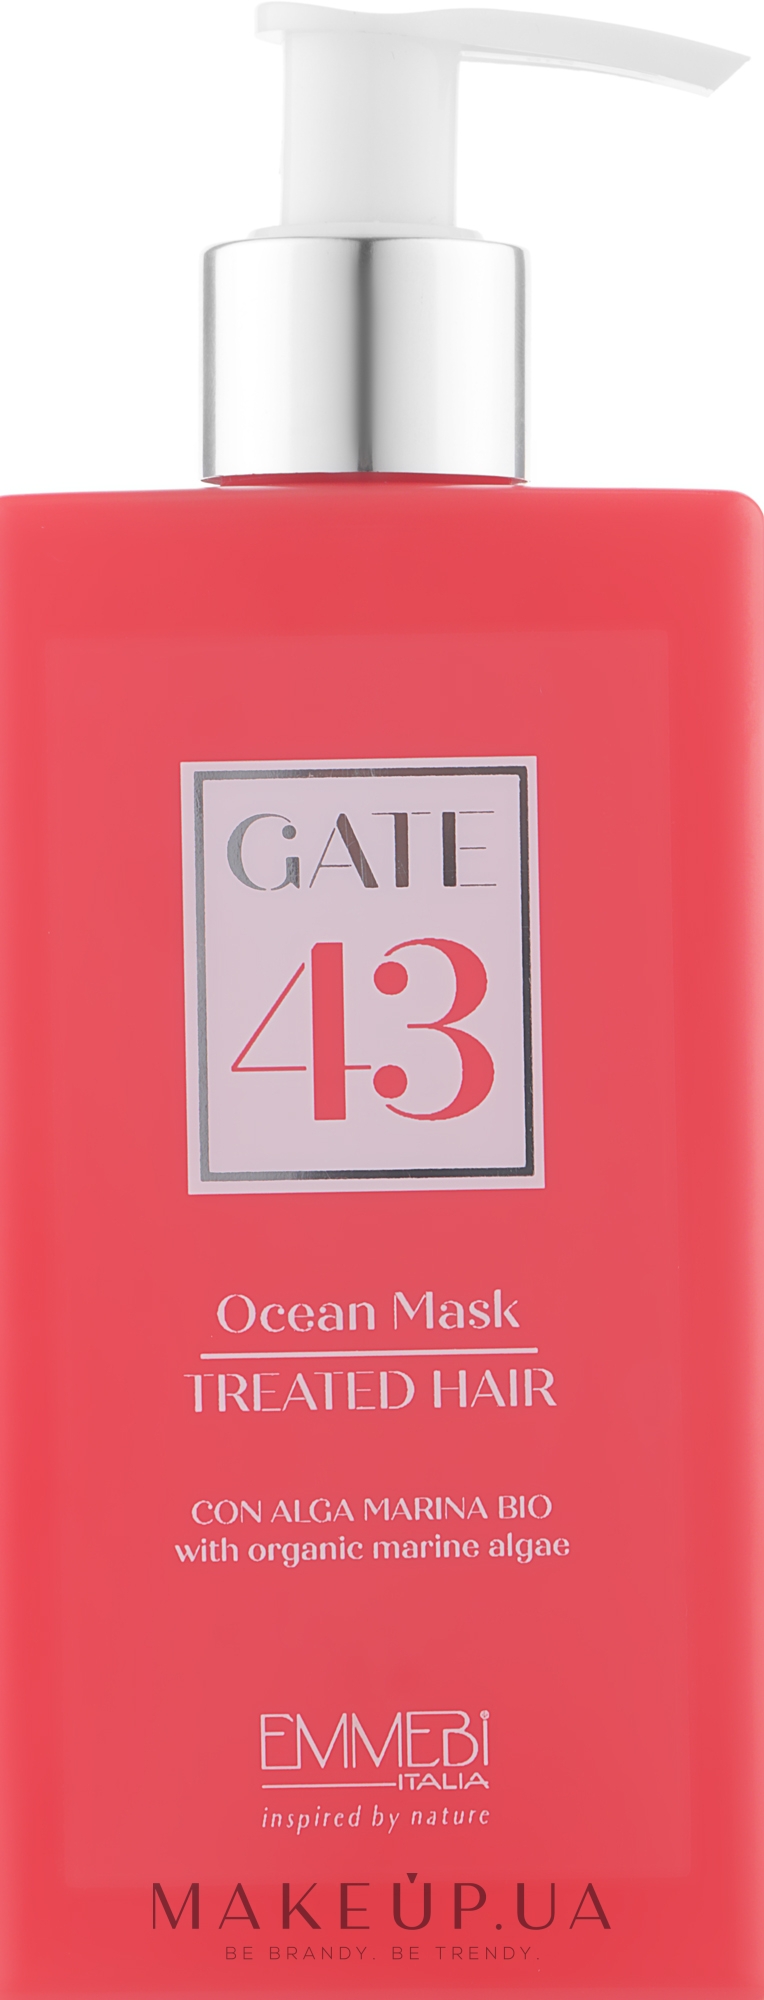 Маска для окрашенных и поврежденных волос - Emmebi Italia Gate 43 Wash Ocean Mask Treated Hair — фото 200ml